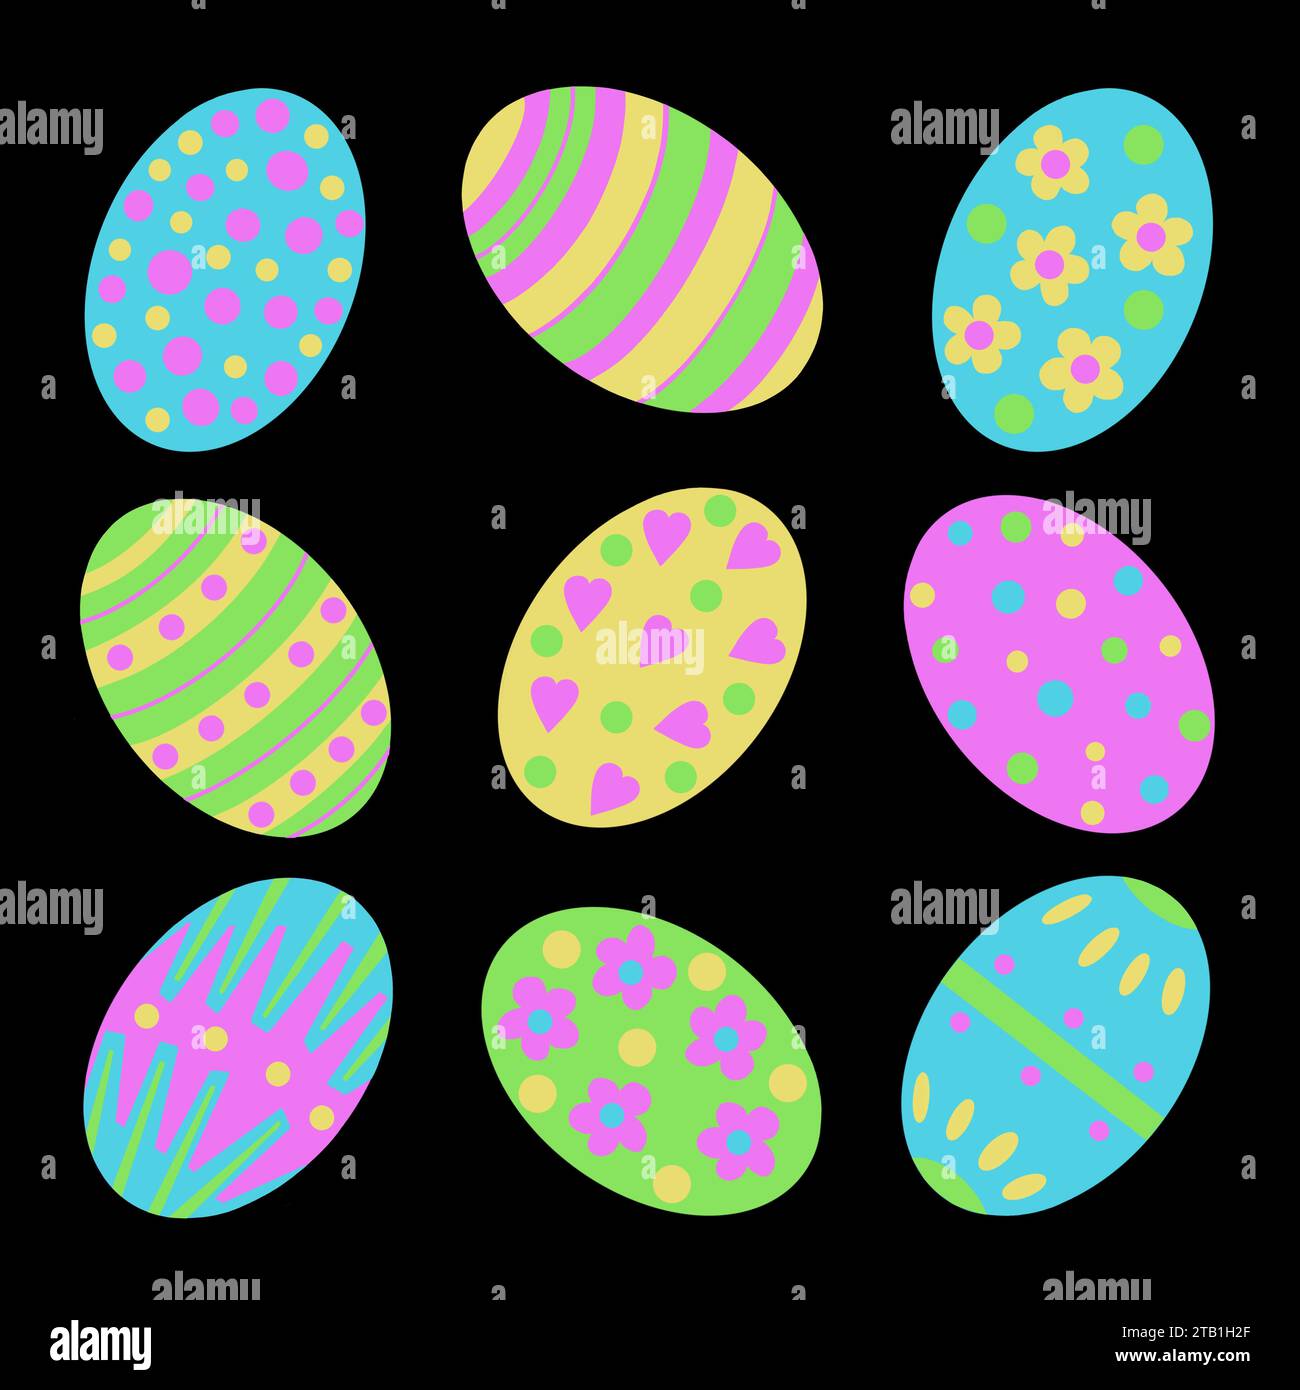 Illustration d'oeuf de Pâques. Oeufs de Pâques décoratifs dans un arrangement original. Pois, rayures, zigzags et fleurs. Oeufs de Pâques lumineux et colorés Banque D'Images